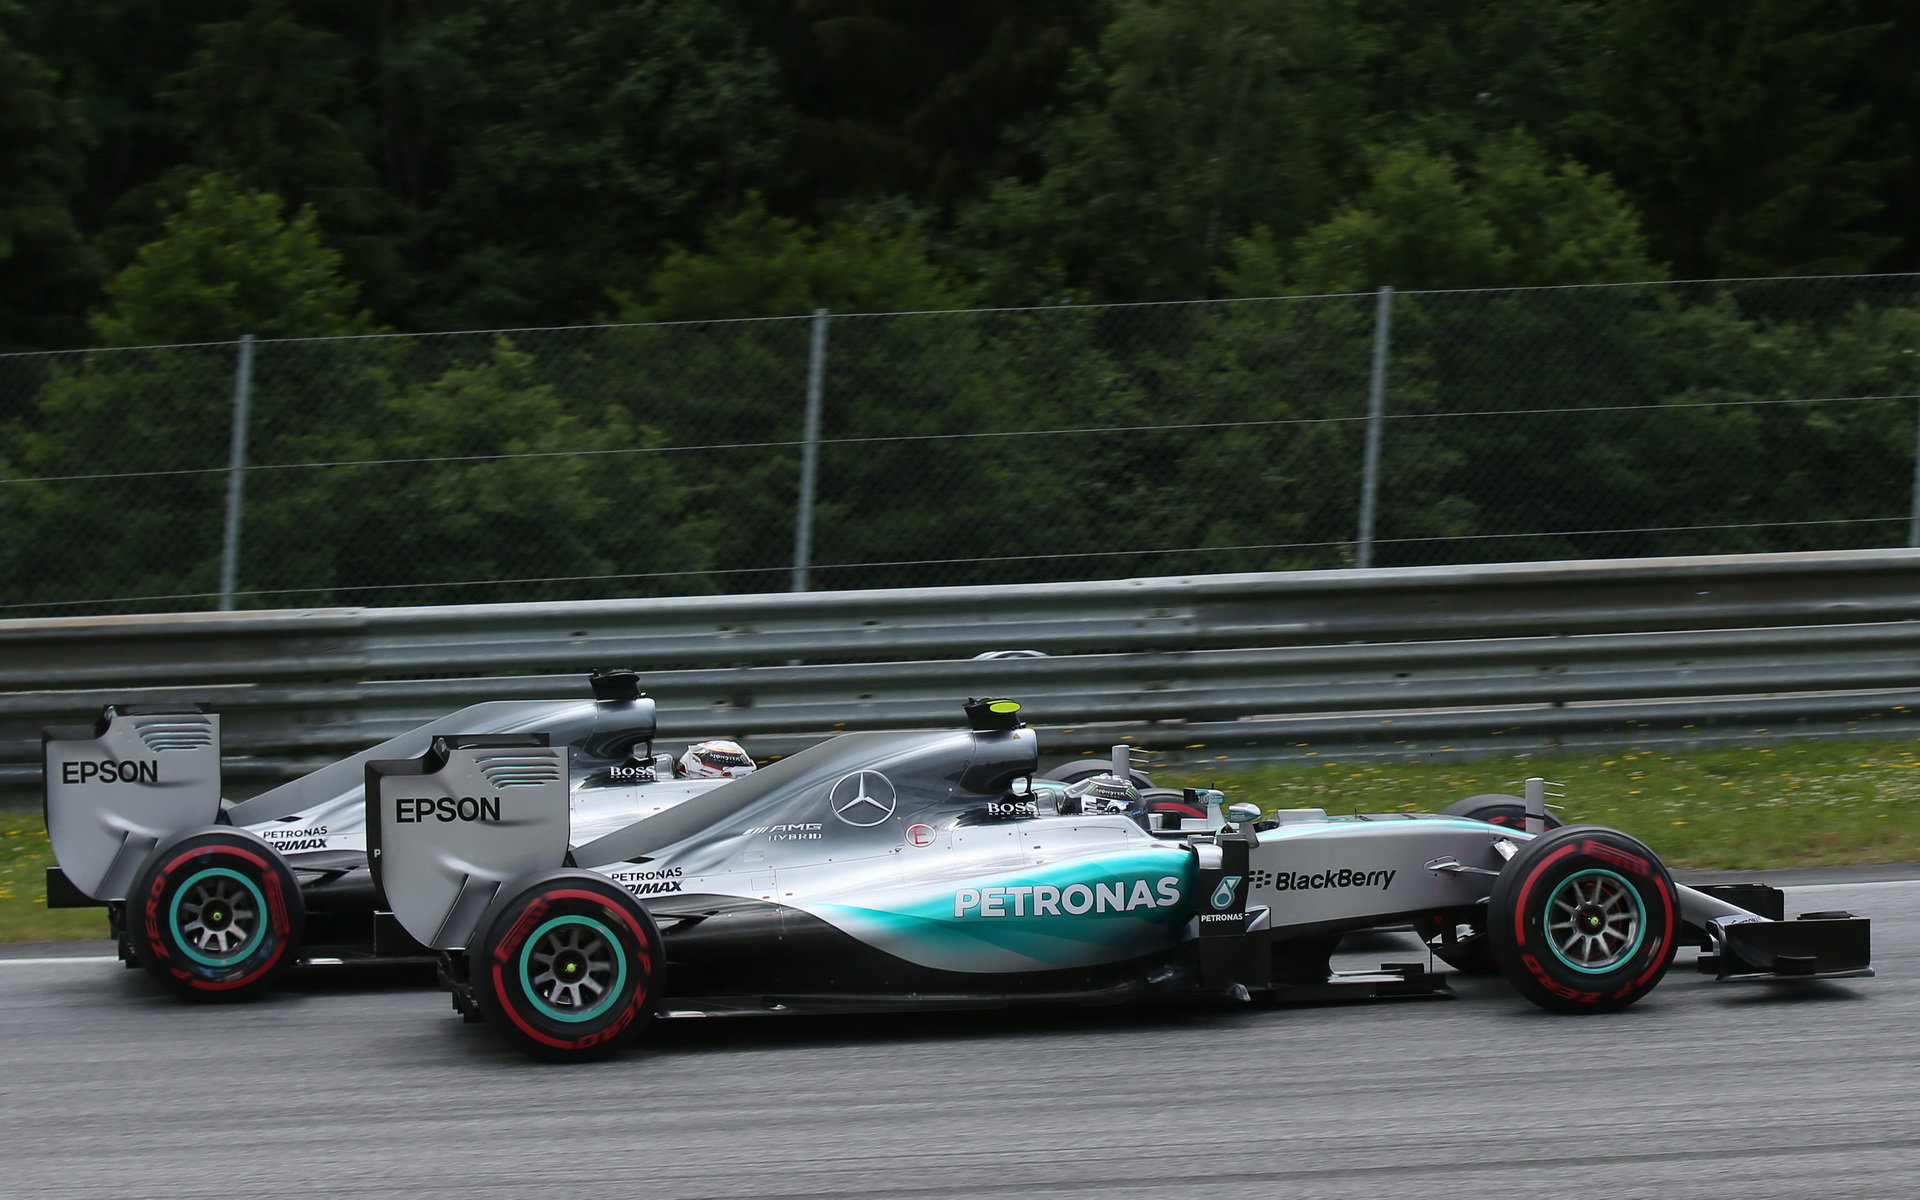 Podobný souboj se odehrál loni po startu, jenže tentokrát měl pro Rosberga podstatně horší následky